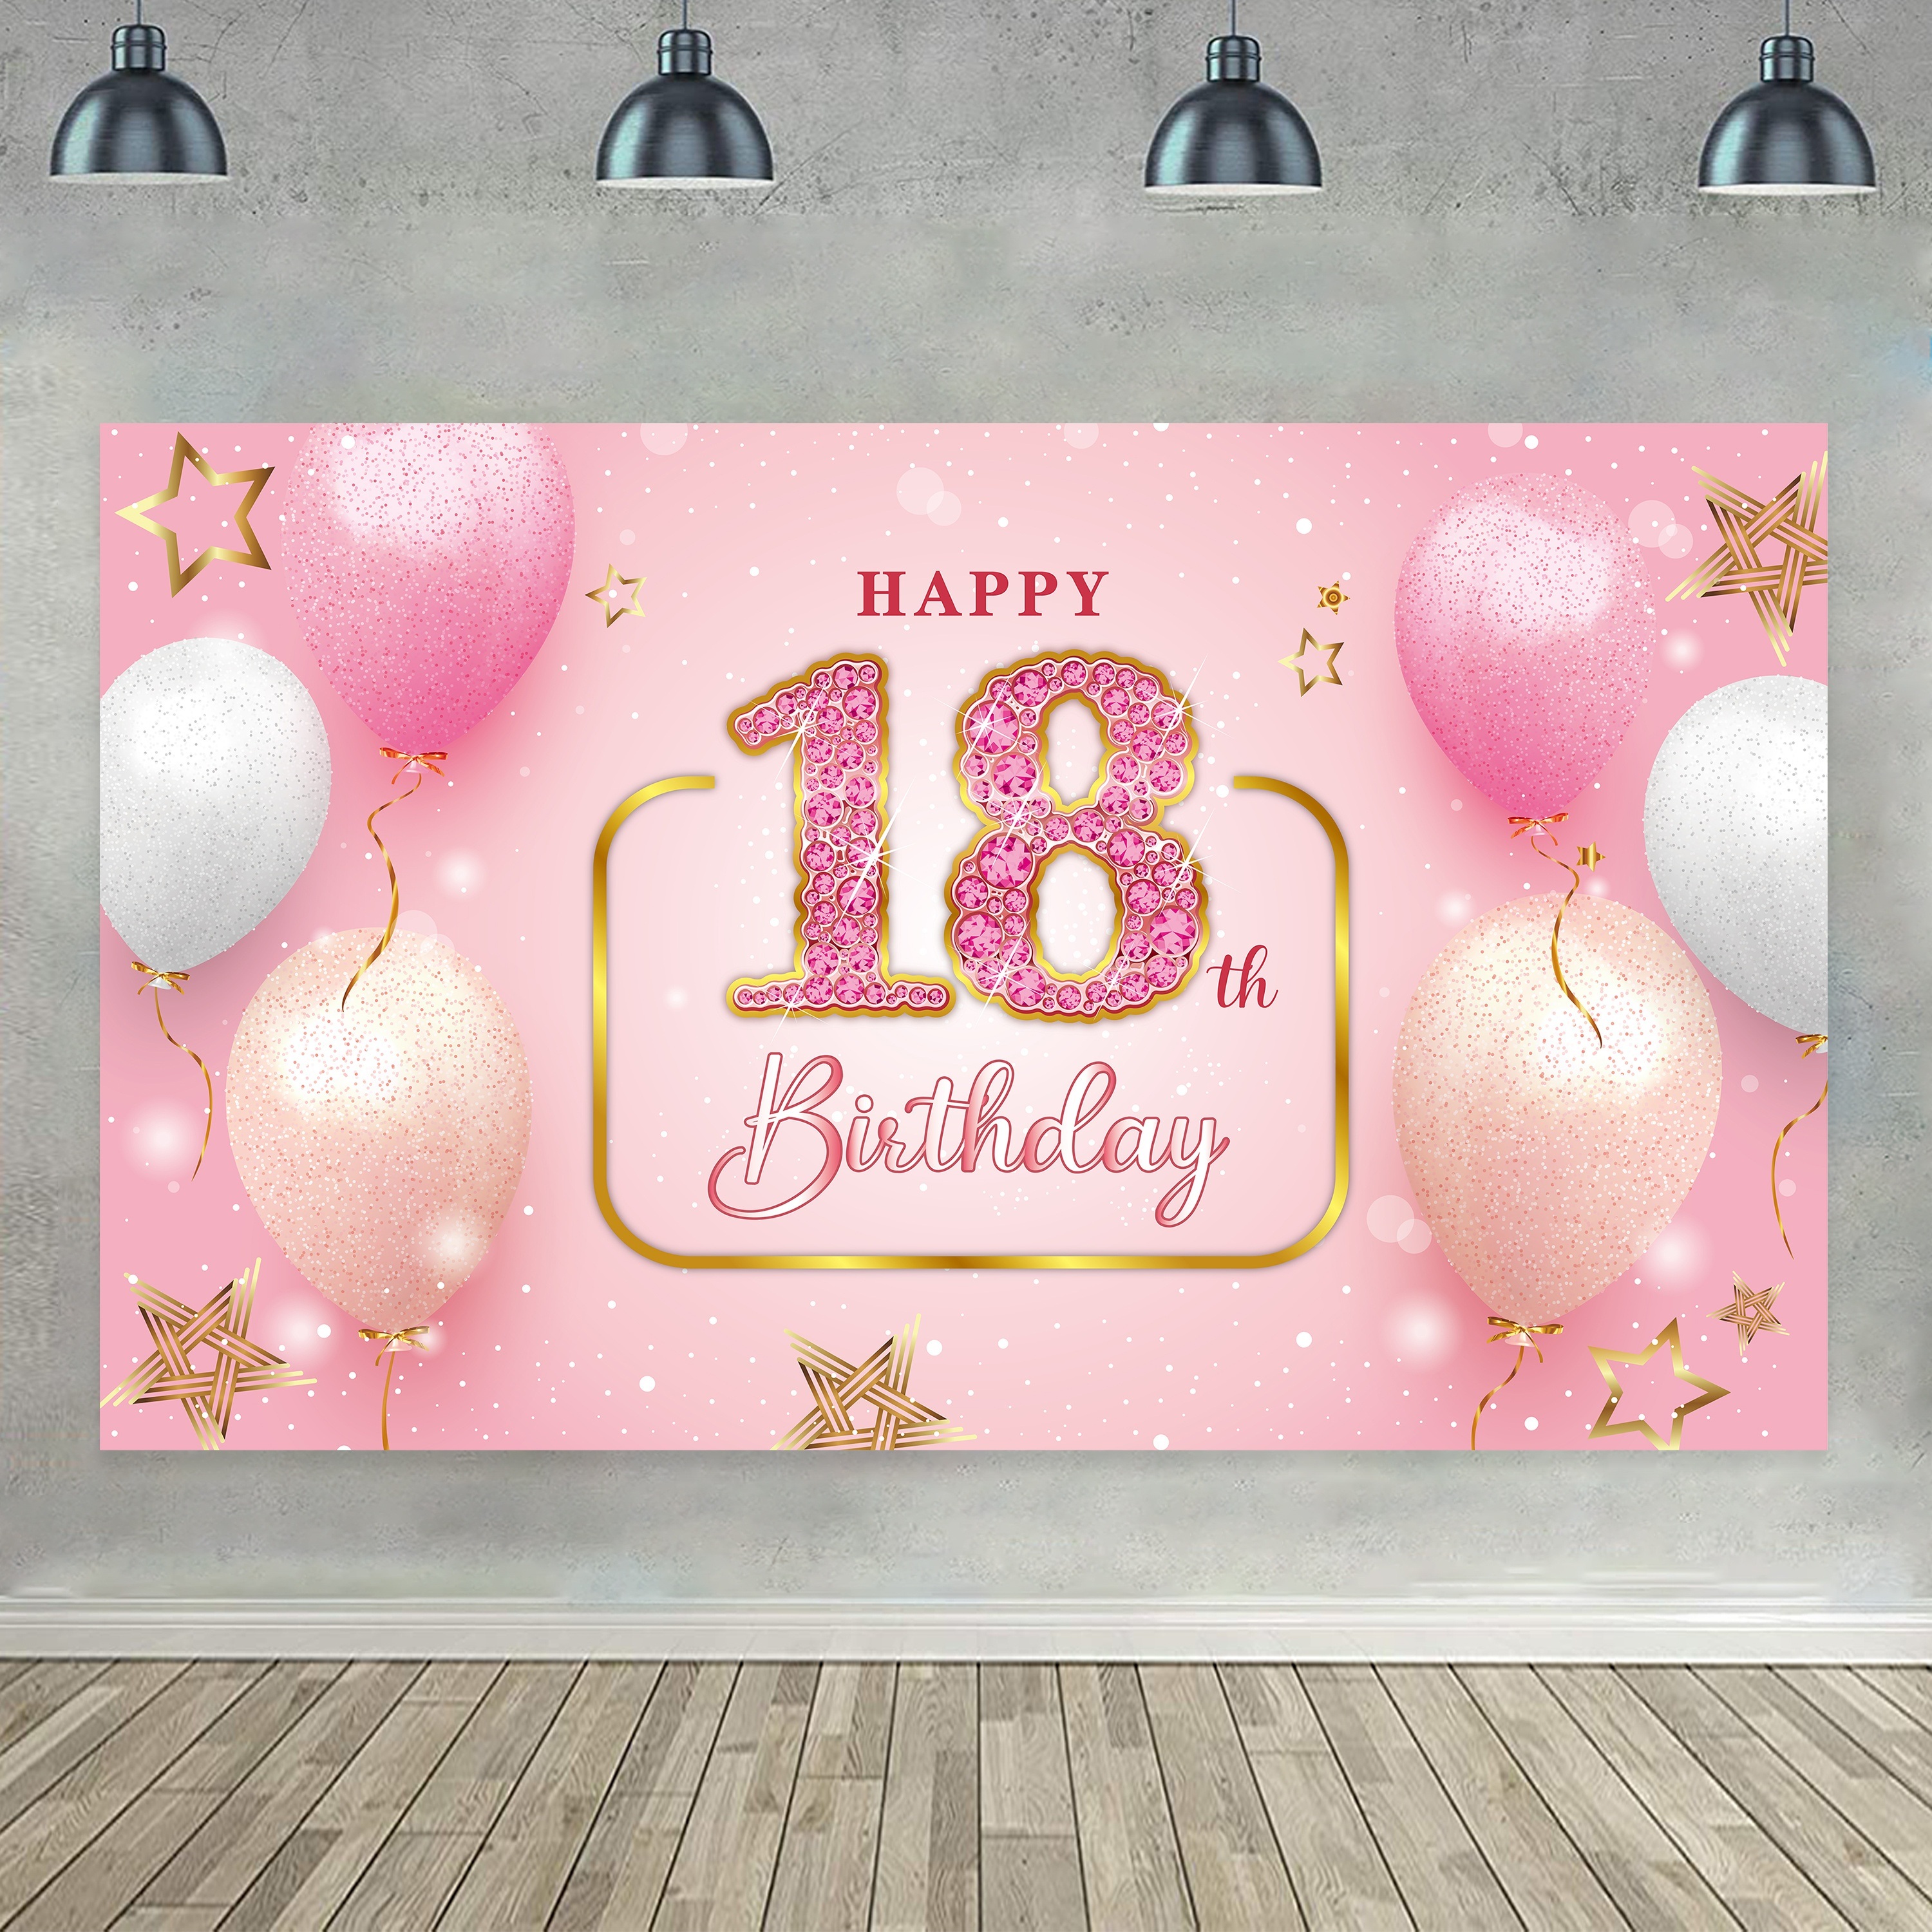 Resultado de imagen para fiesta de 18 años  18th birthday decorations,  18th birthday party, 18 birthday party decorations